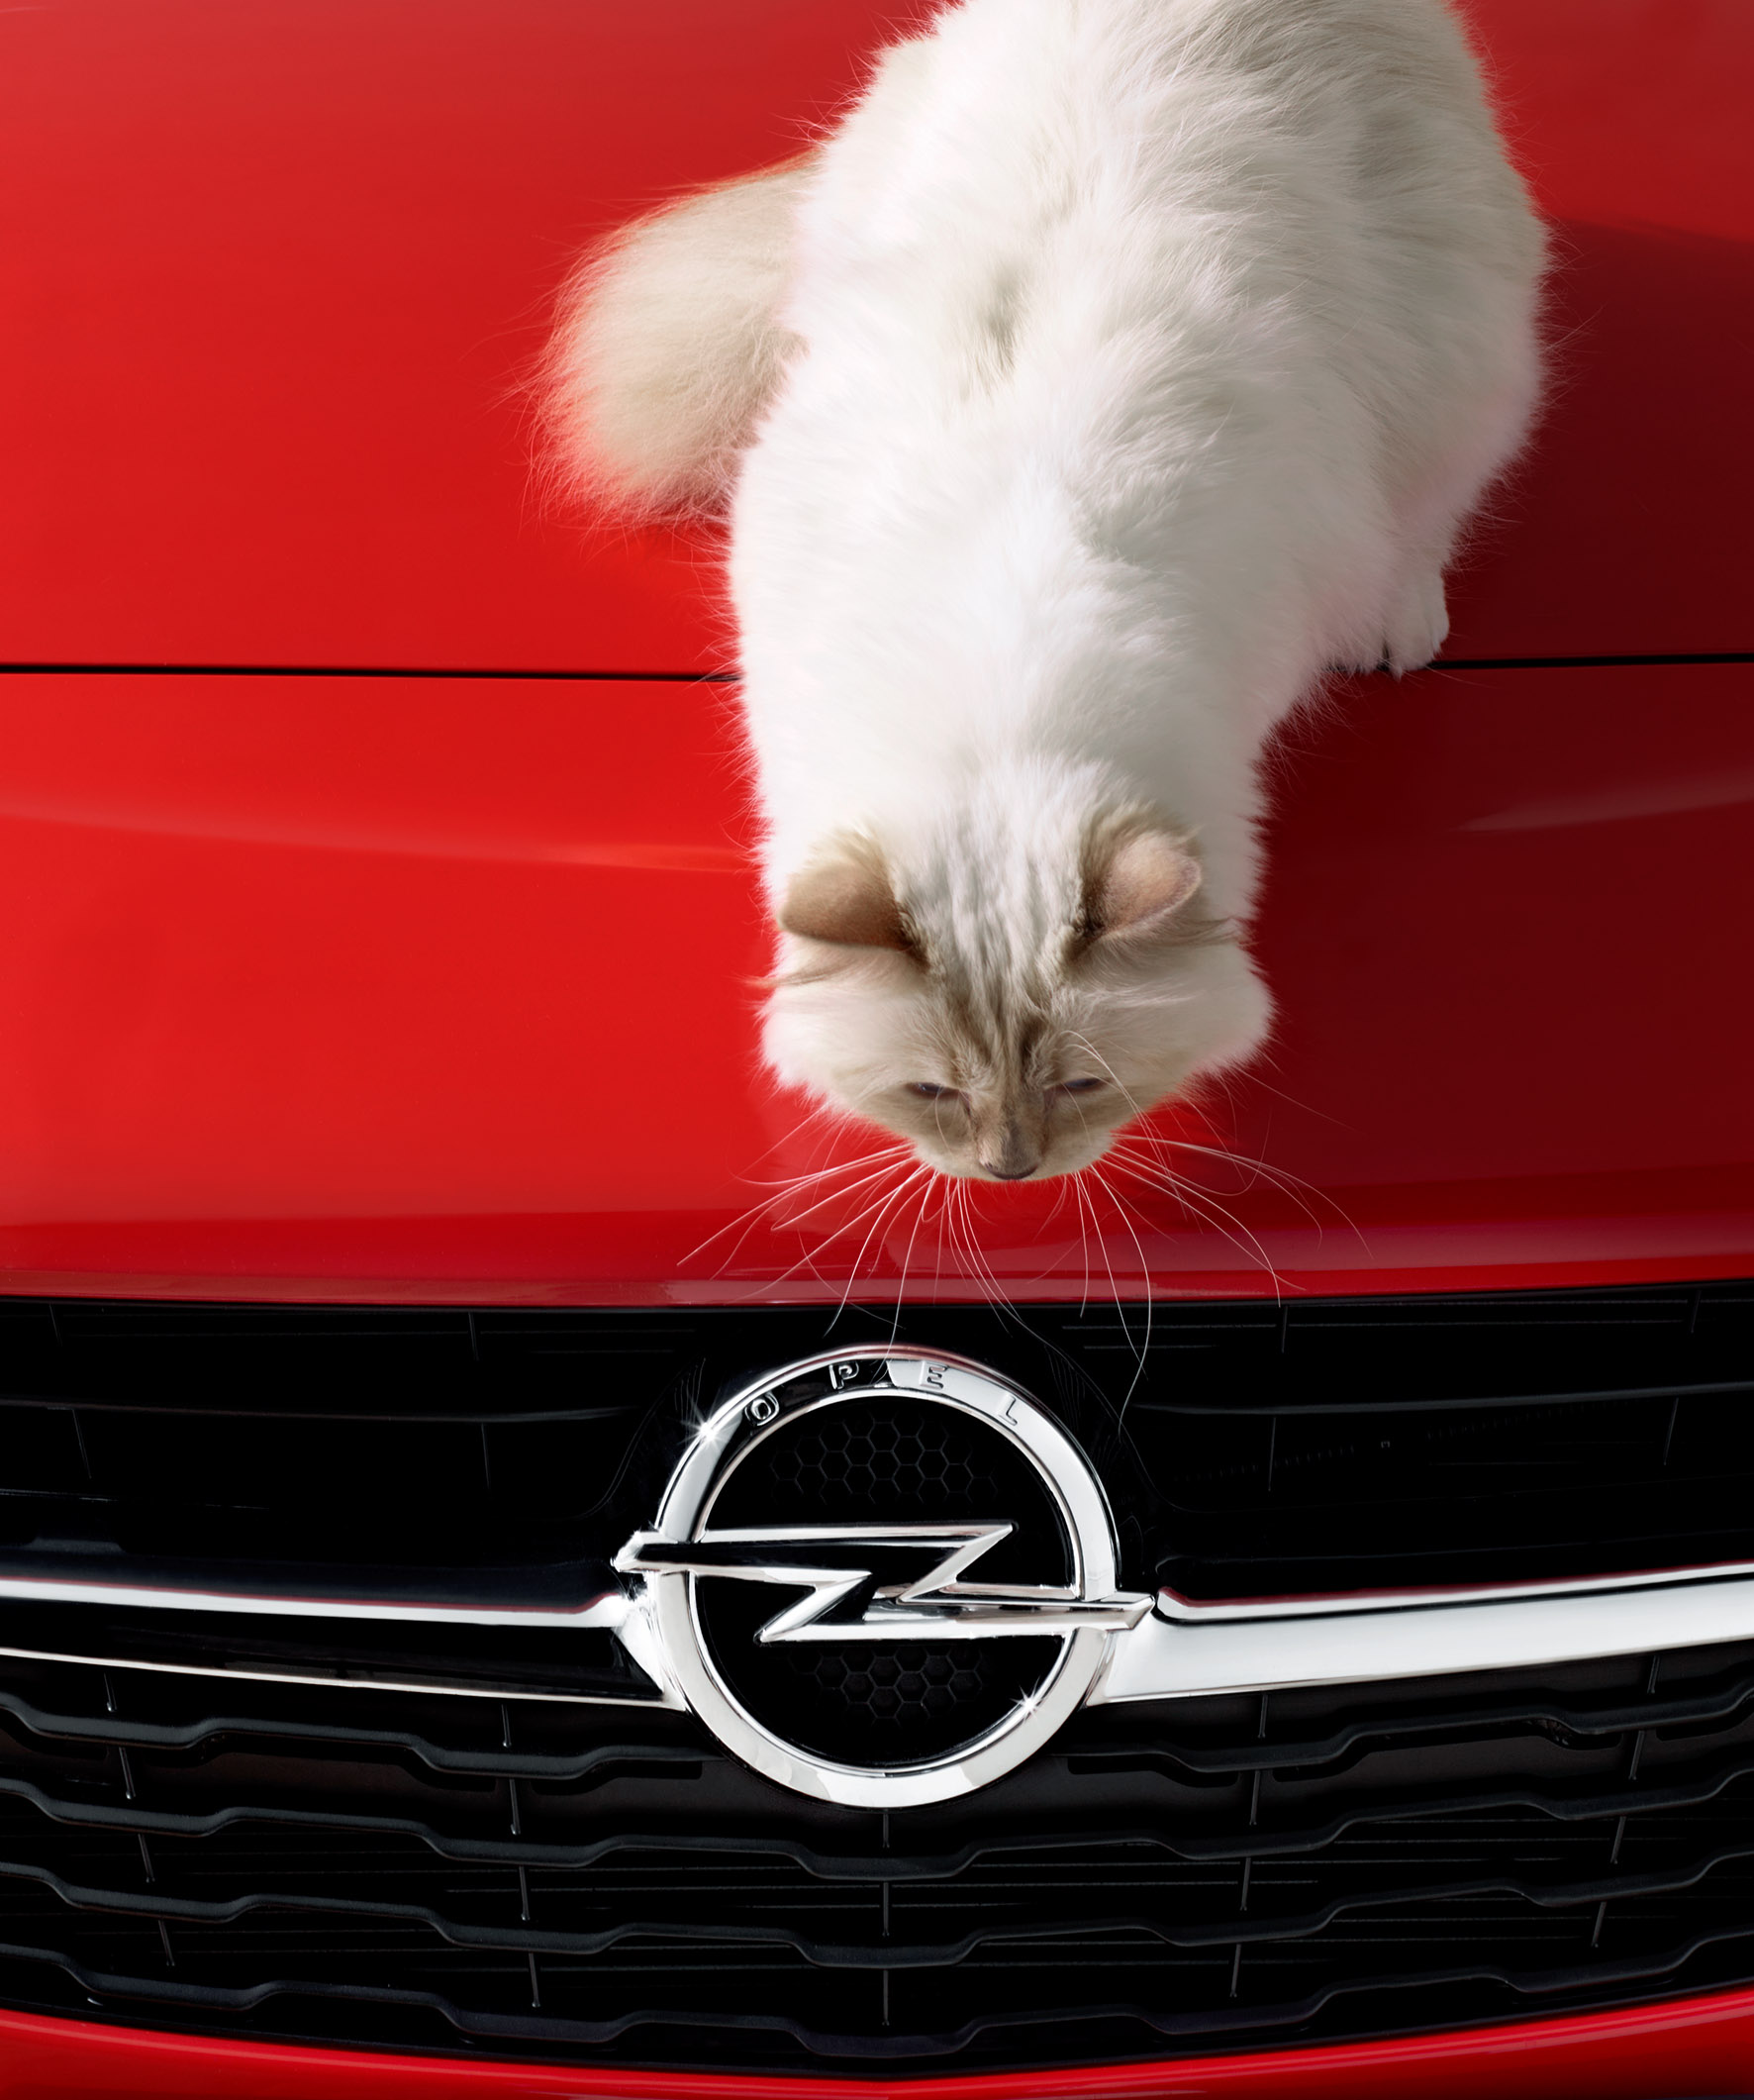 Котка върху горещ преден капак - Opel Corsa и Карл Лагерфелд